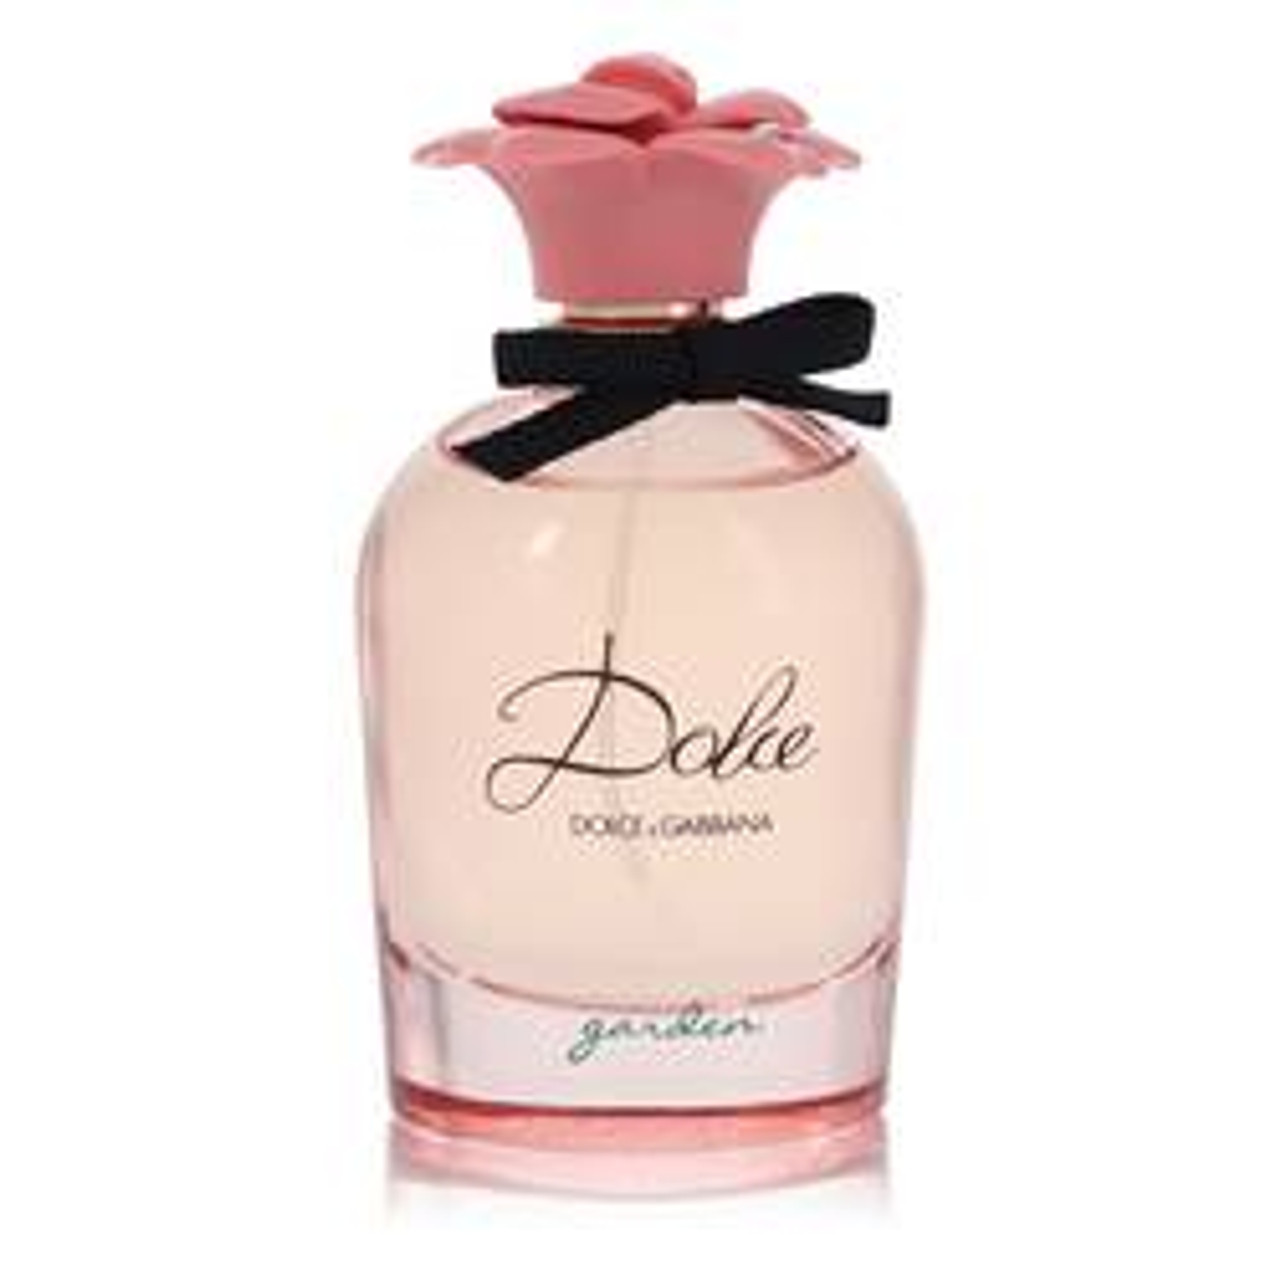 Dolce Garden Perfume By Dolce & Gabbana Eau De Parfum Spray (Tester) 2.5 oz for Women - *Pre-Order